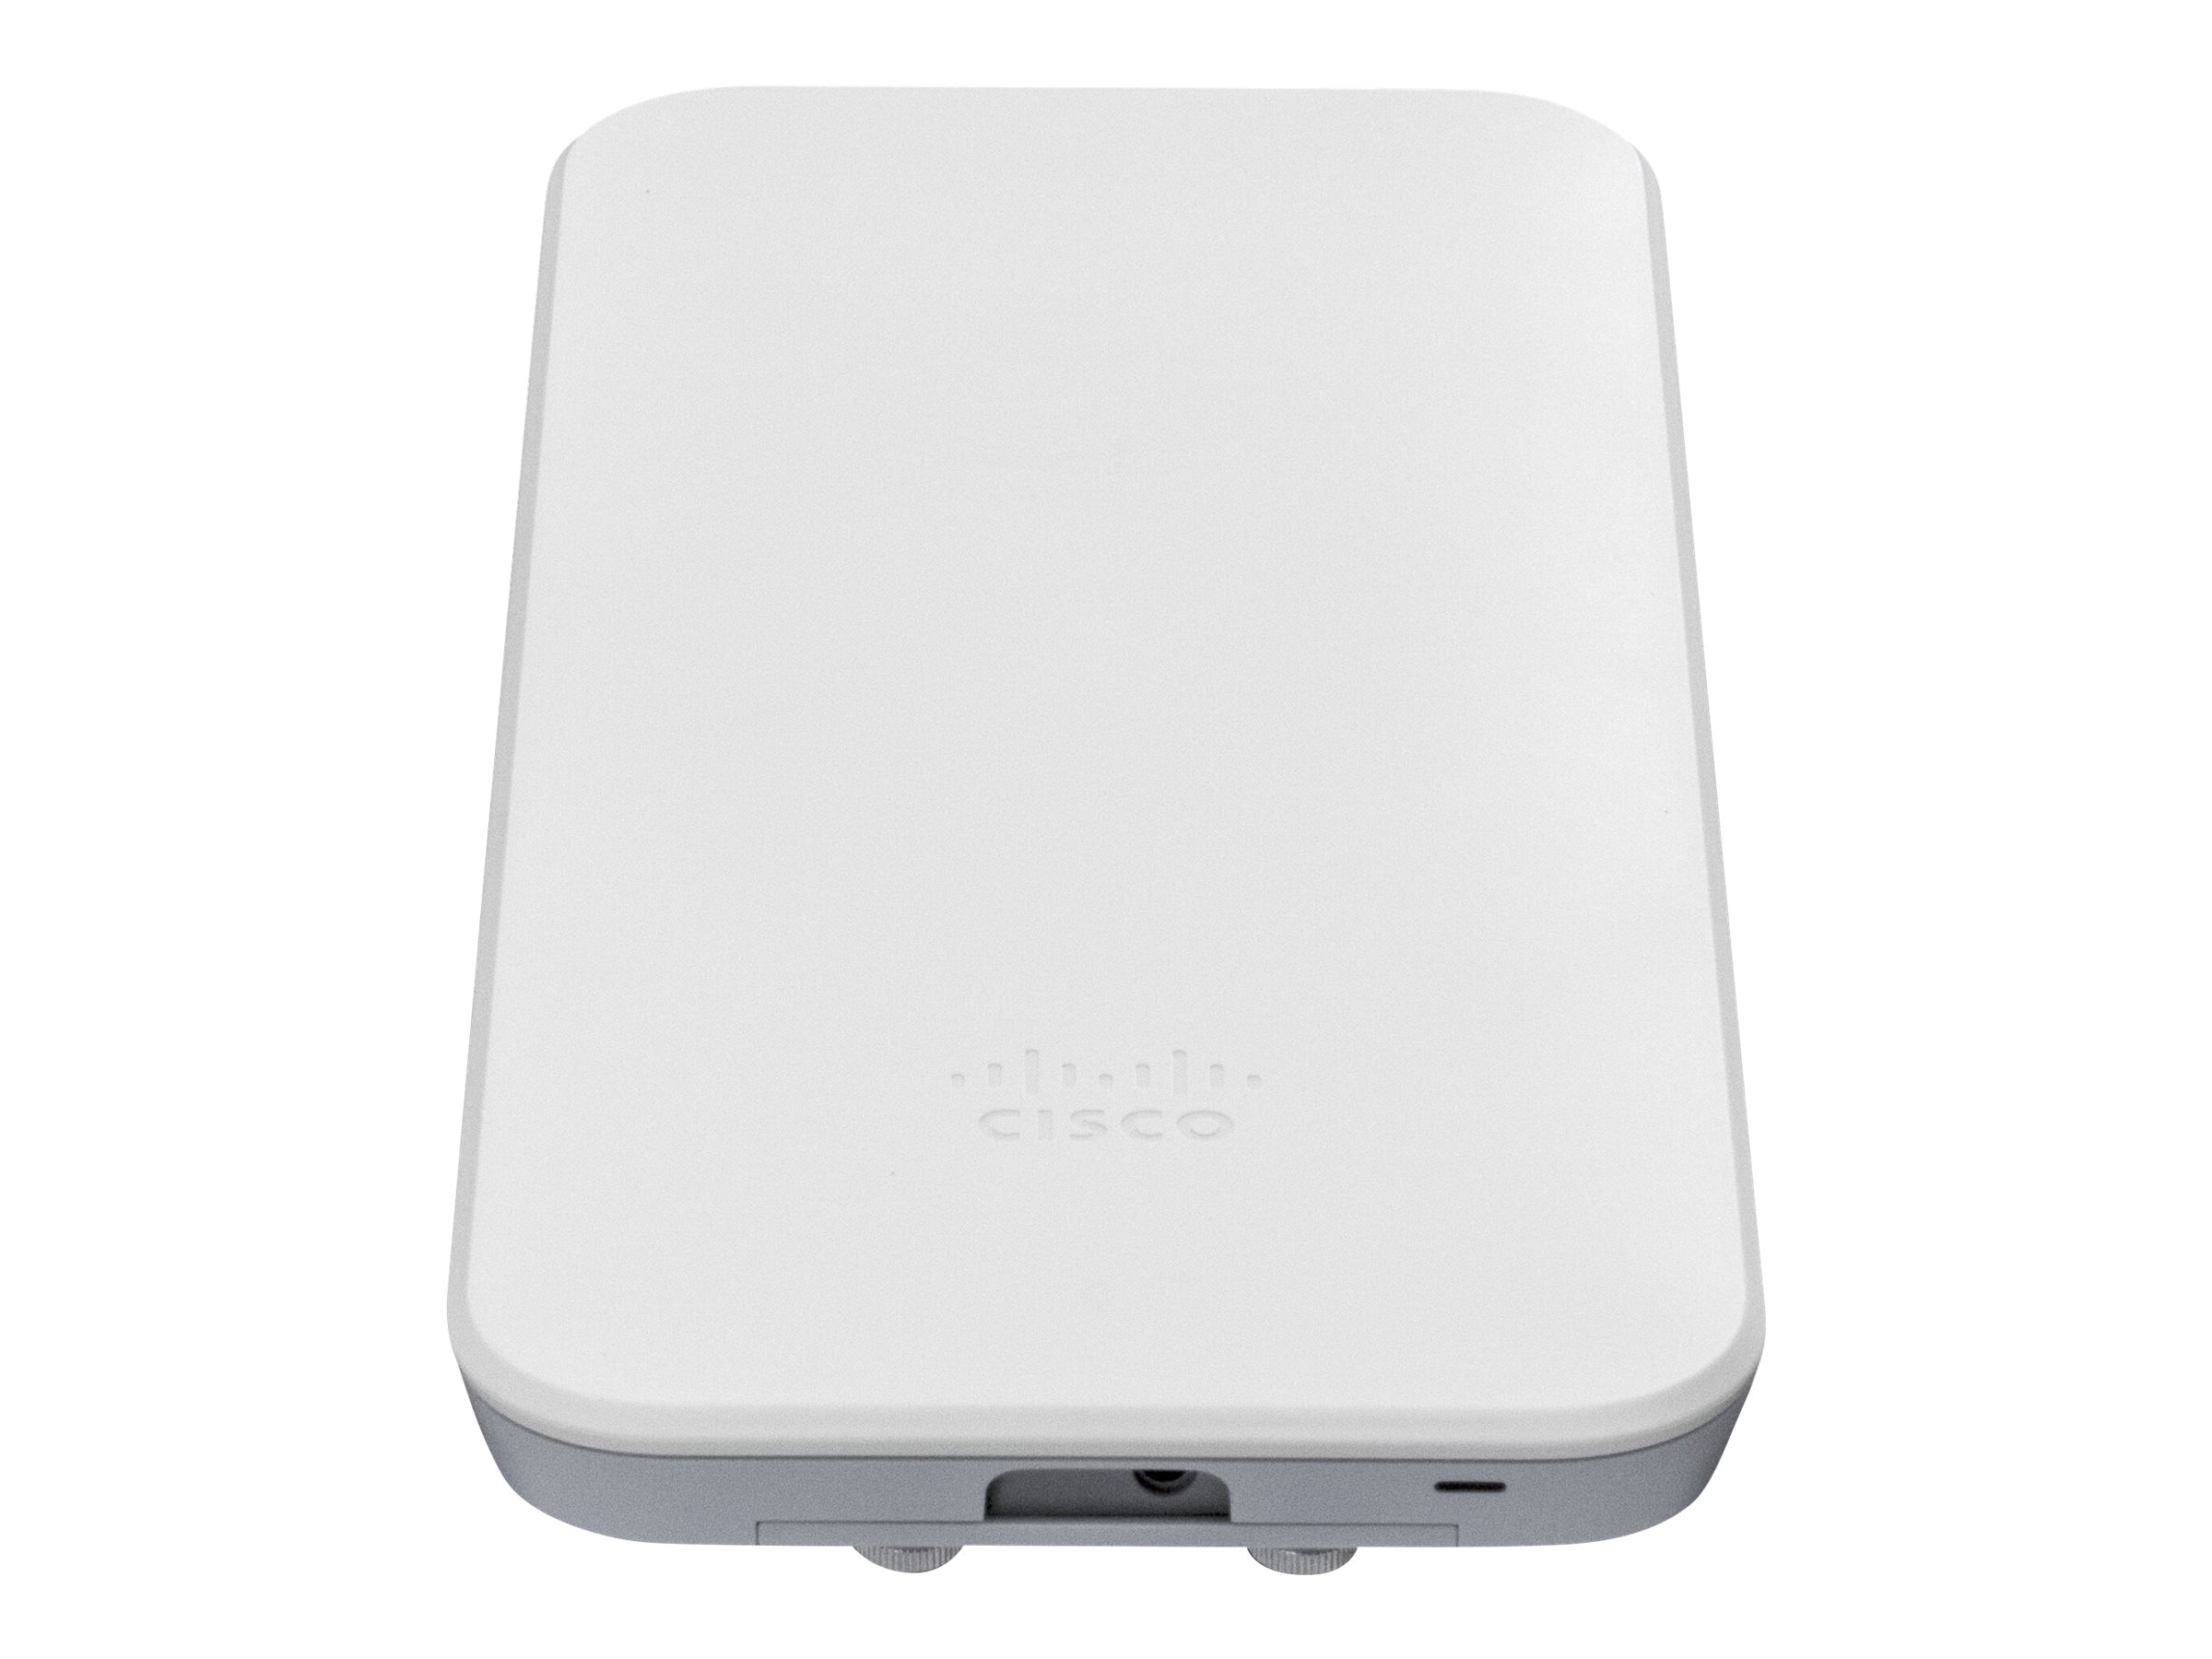 Cisco Meraki Go - Accesspoint - 1GbE - Wi-Fi 6 - 2.4 GHz, 5 GHz - zur Wandmontage geeignet